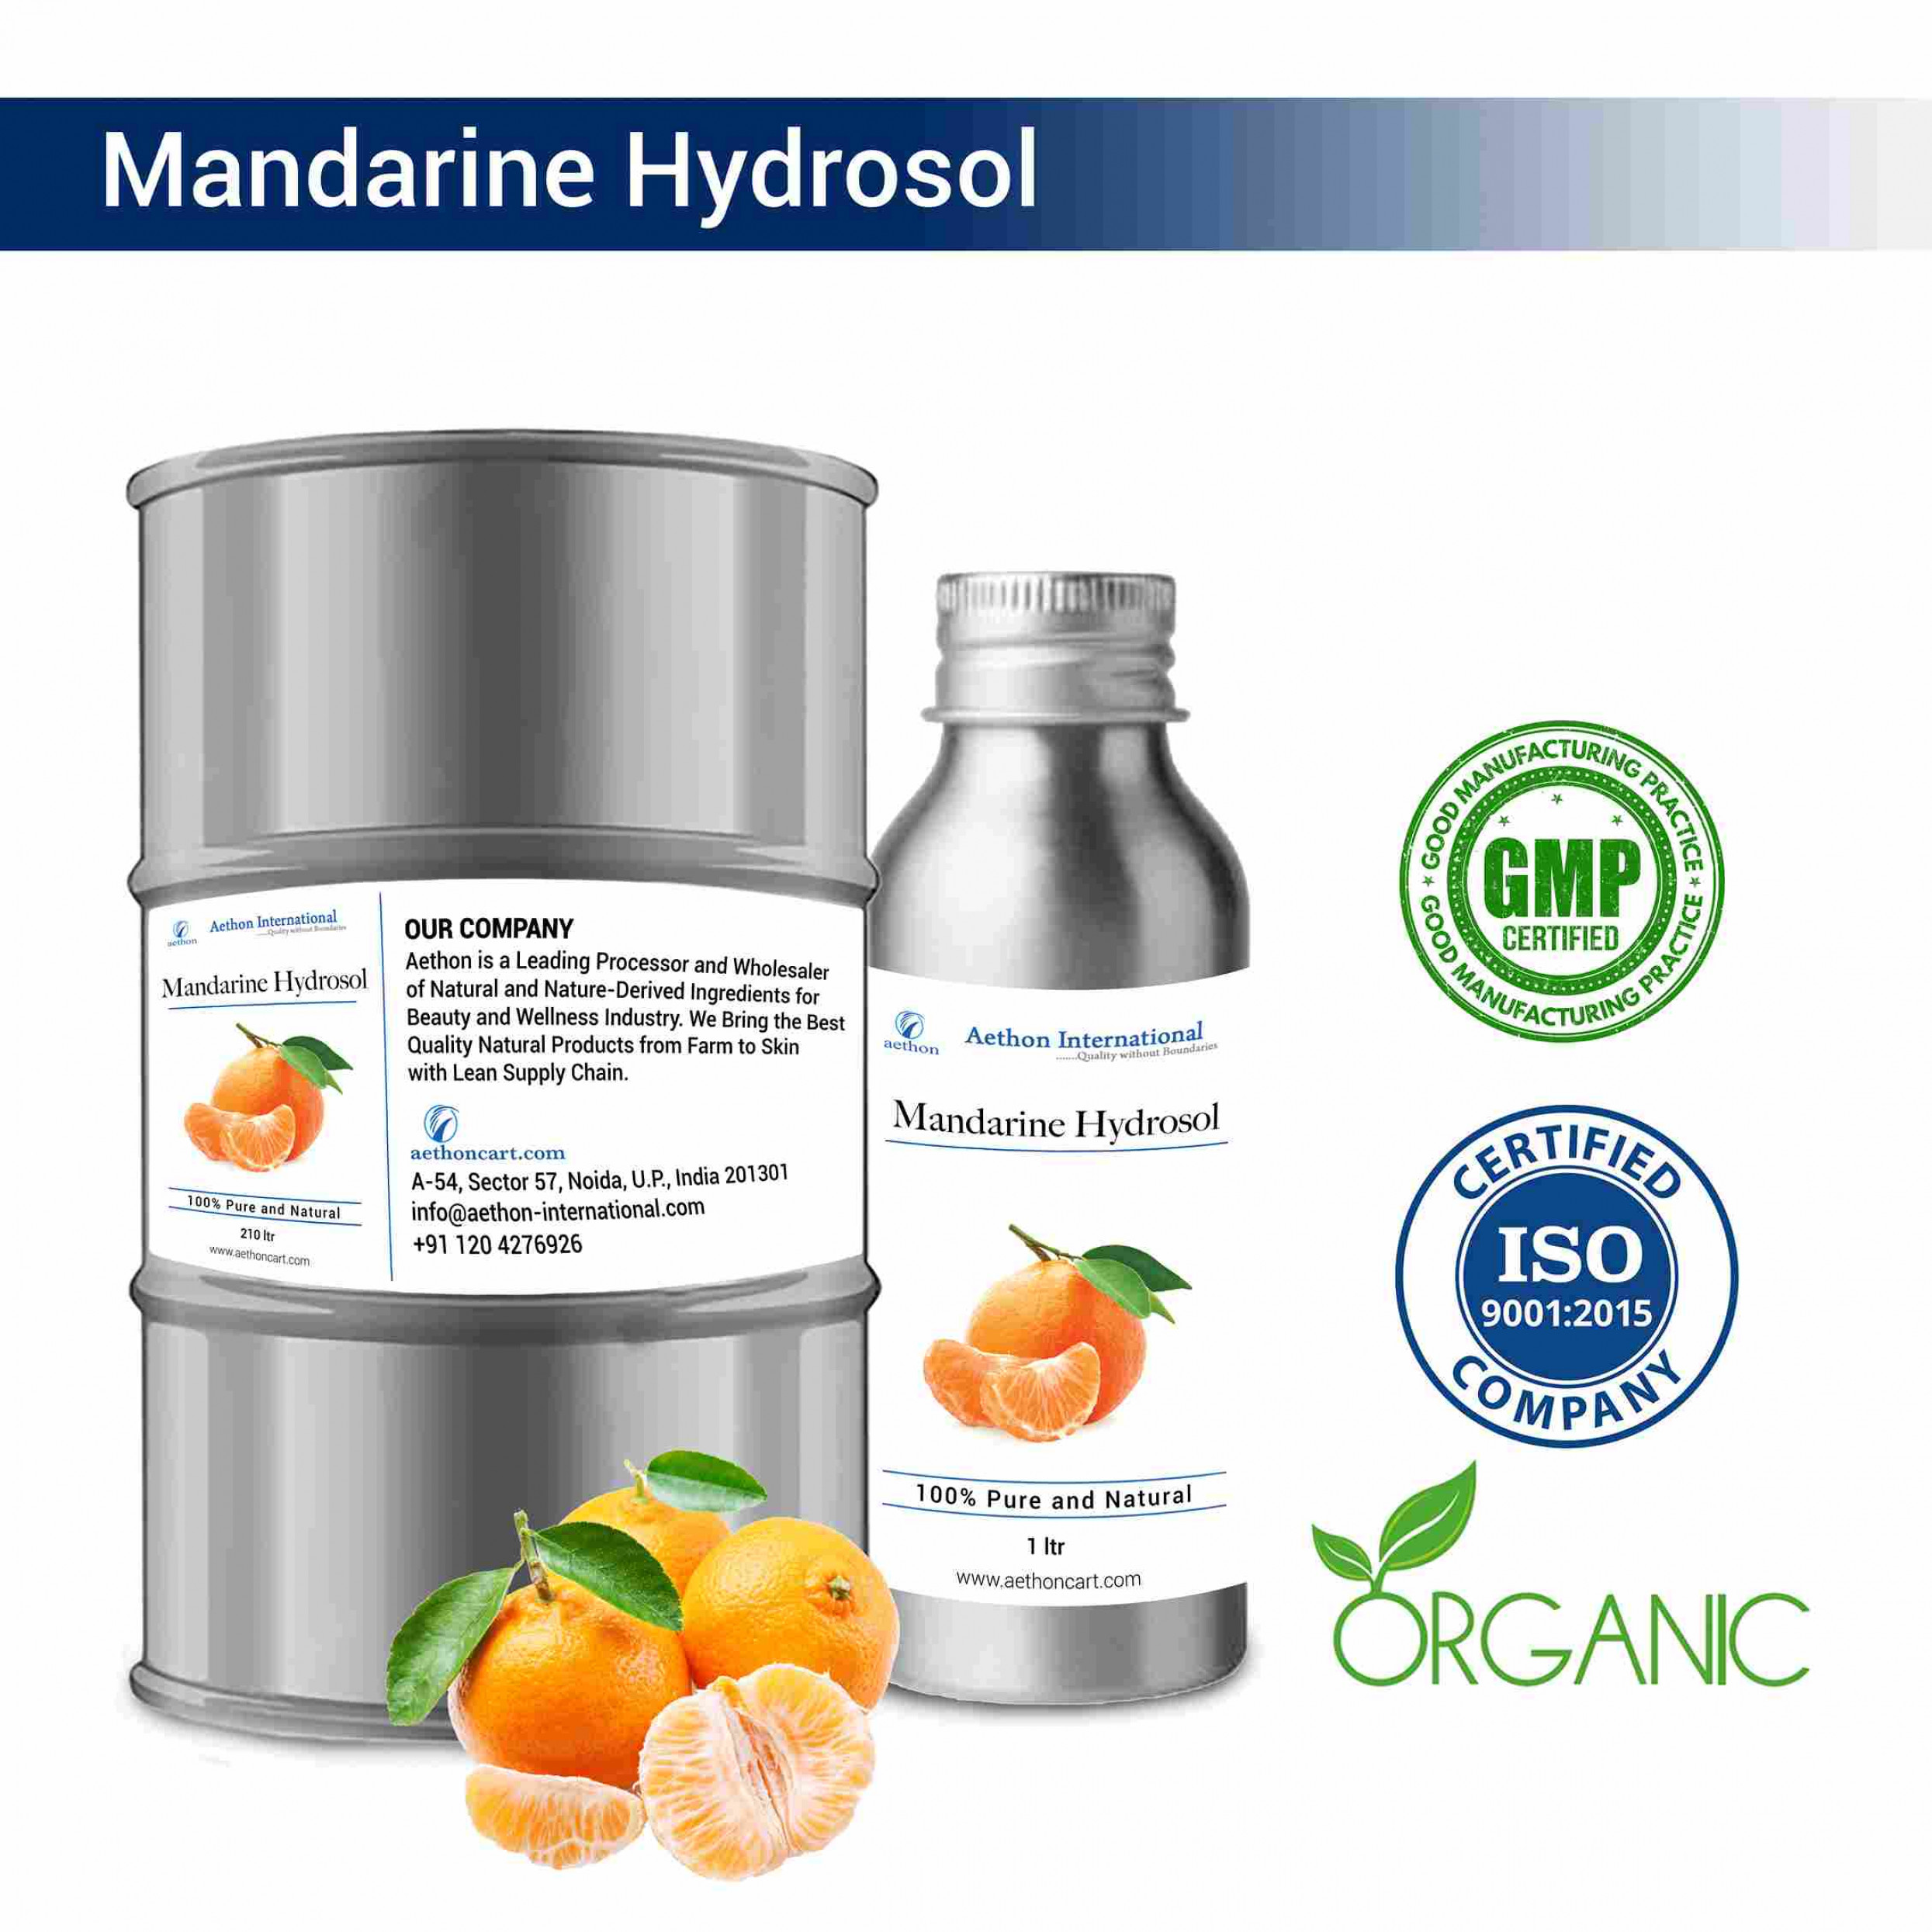 Mandarin Hydrosol